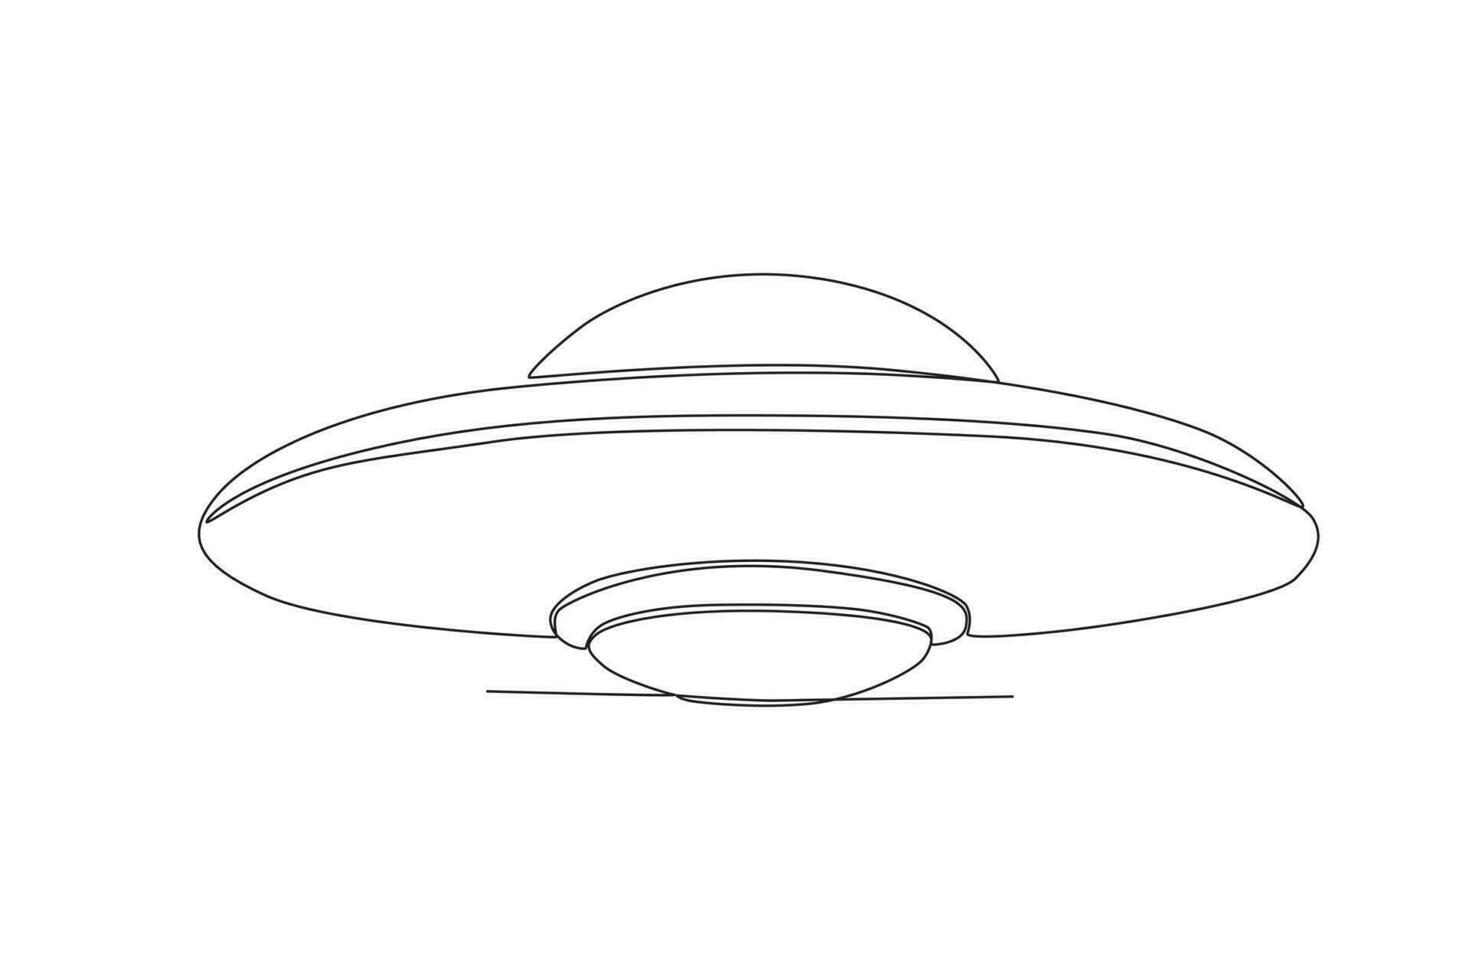 vector continuo uno línea dibujo OVNI no identificado volador objeto exterior espacio concepto soltero línea dibujar diseño vector